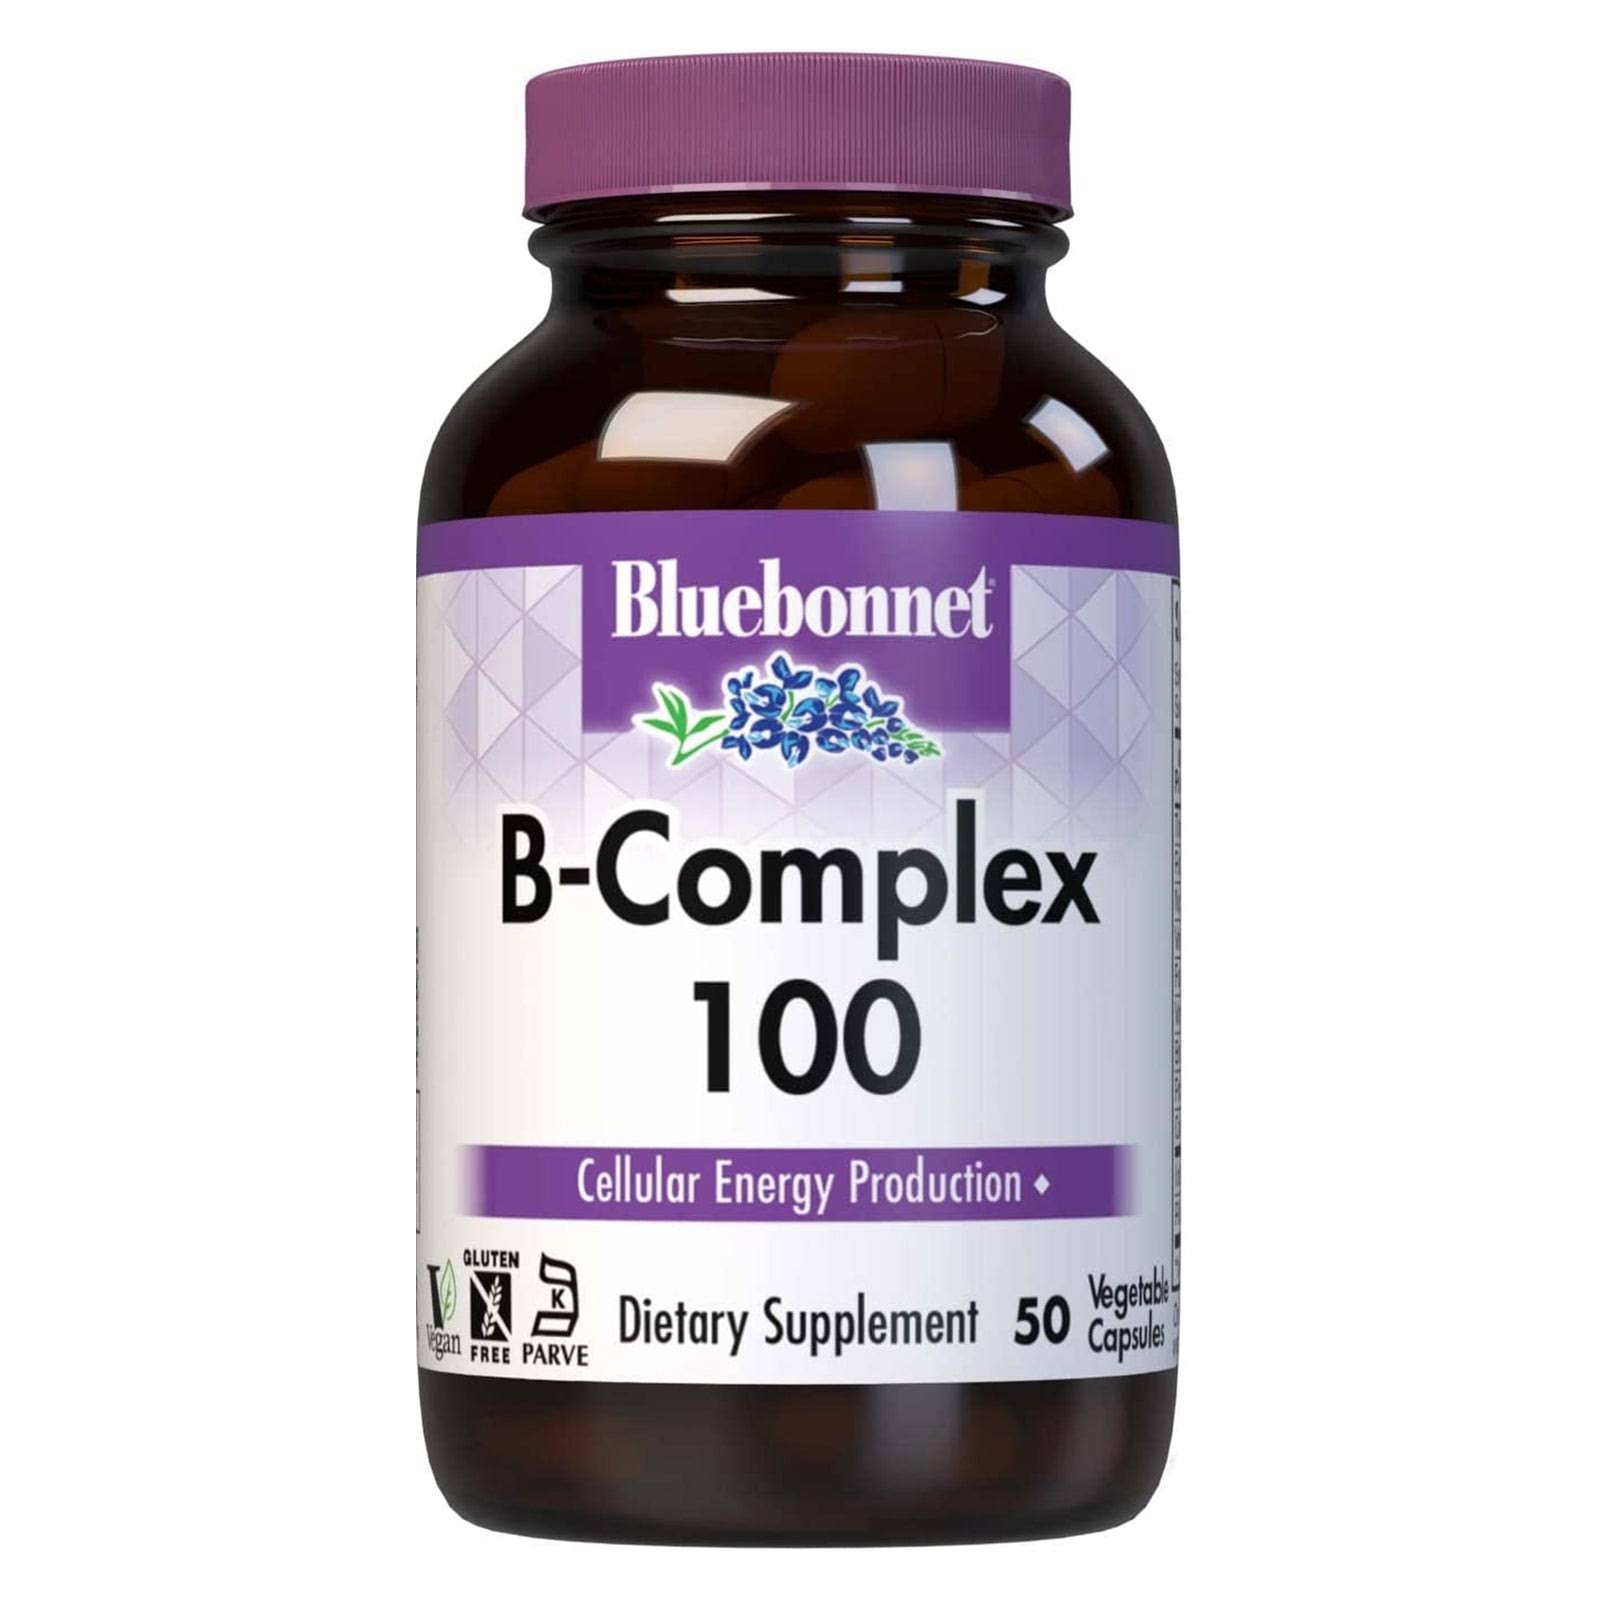 Bluebonnet B-Complex 100 Dietary Supplement - 250 Vcaps